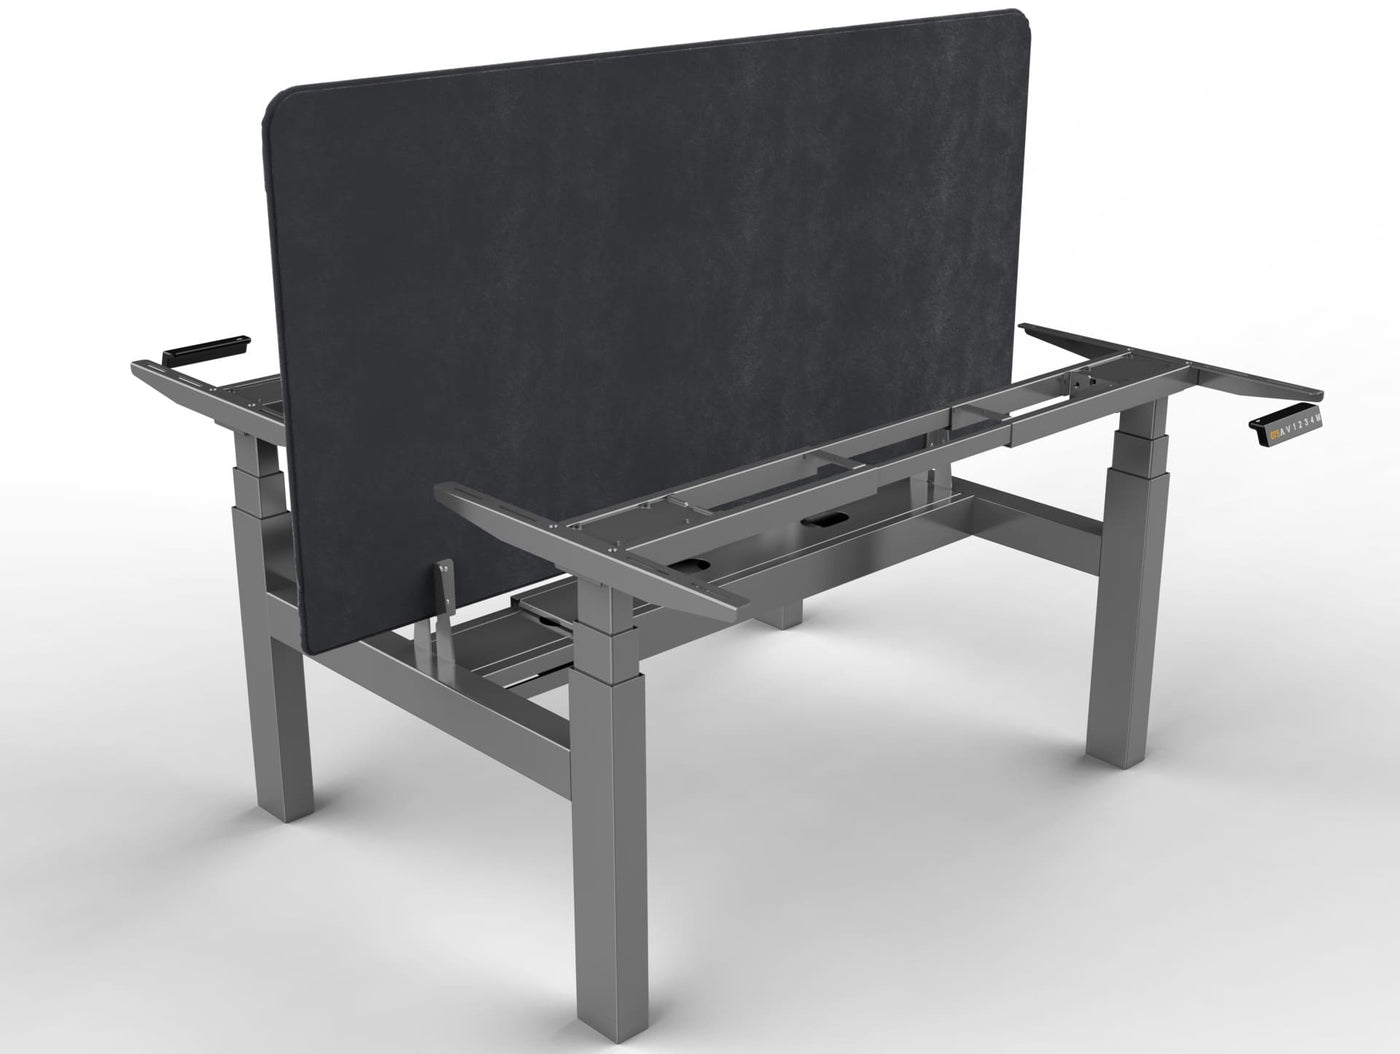 Piètement assis debout motorisé DuoDesk : un bureau collaboratif ergonomique -  - duodesk - UP & DESK